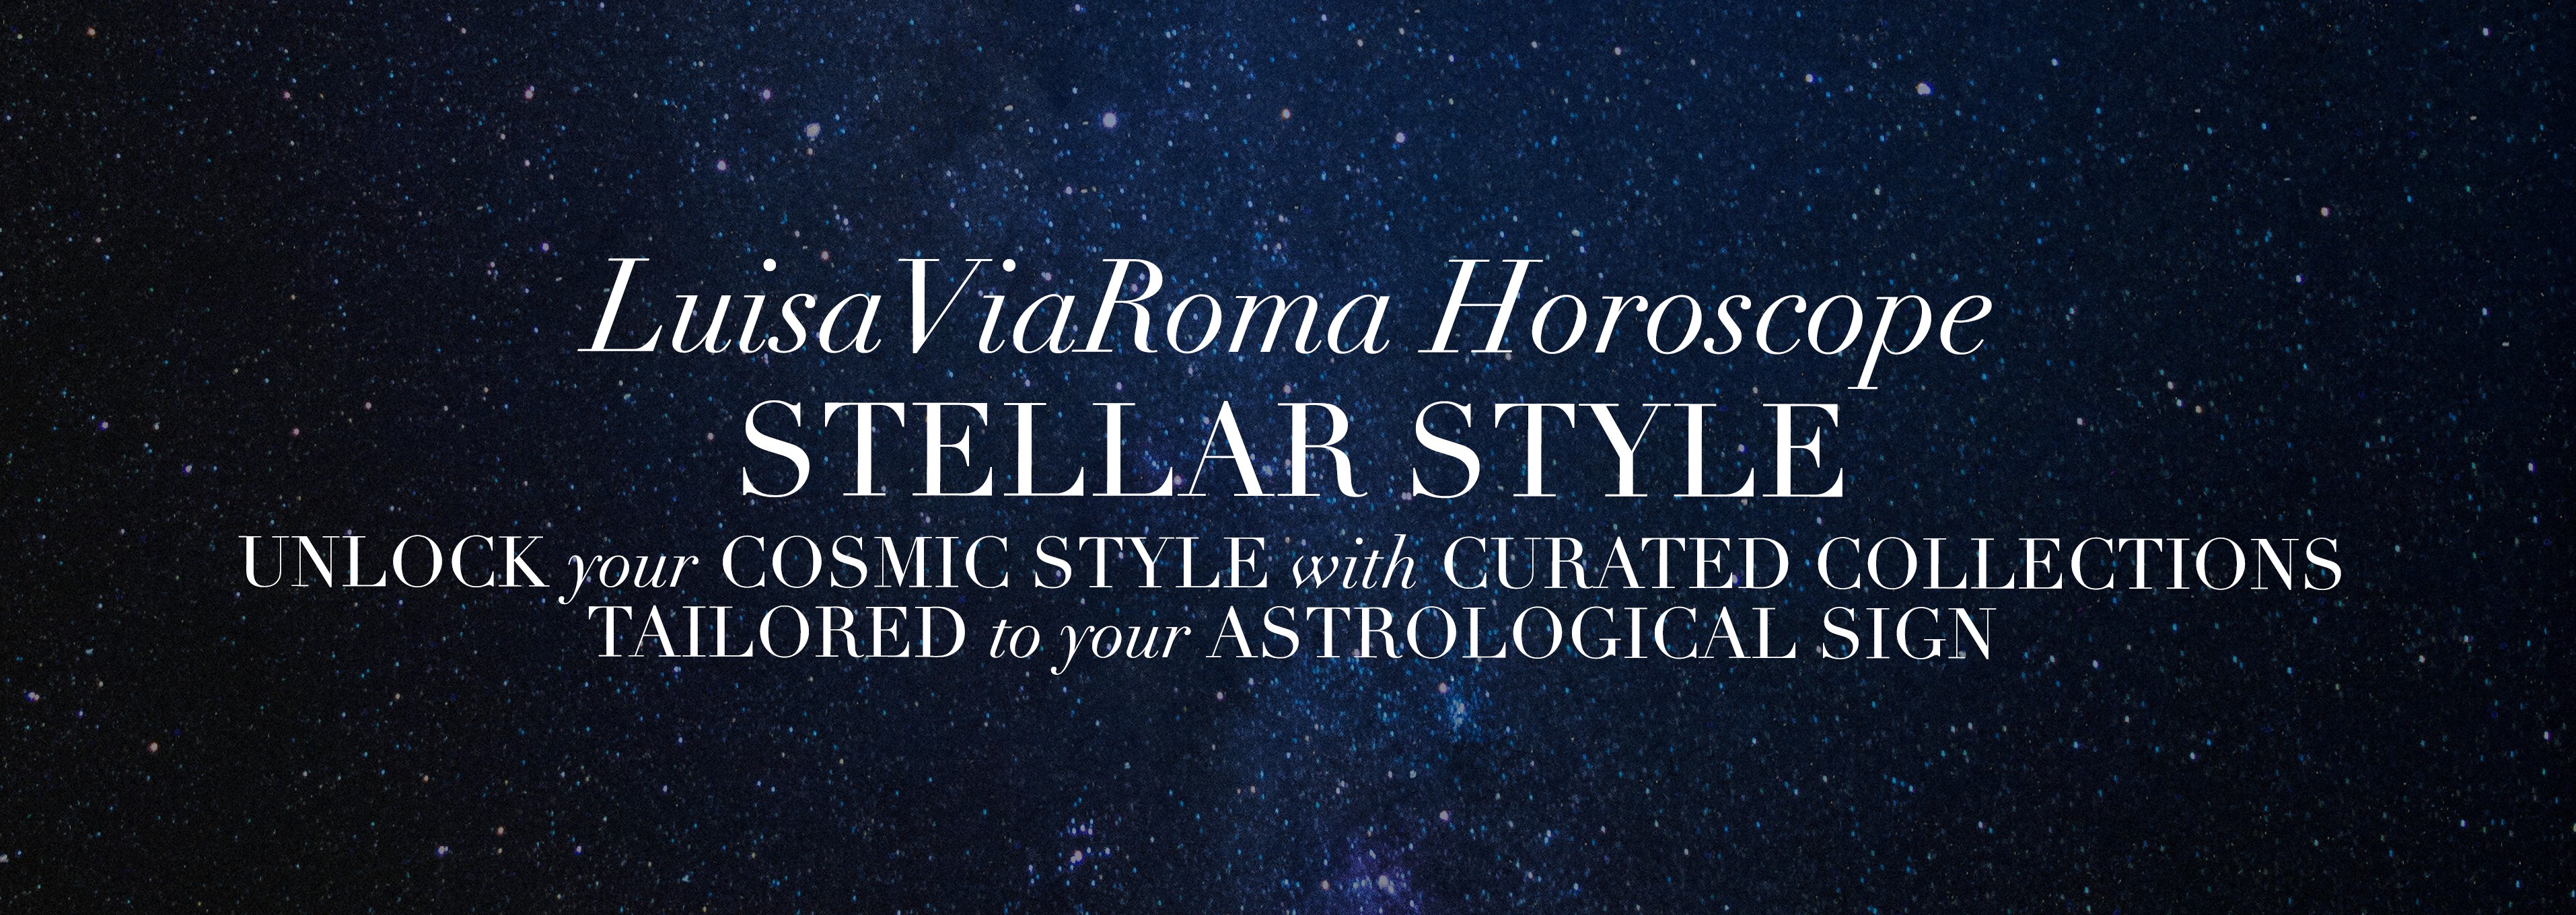 Das Fashion-Horoskop von LuisaViaRoma: Galaktischer Style